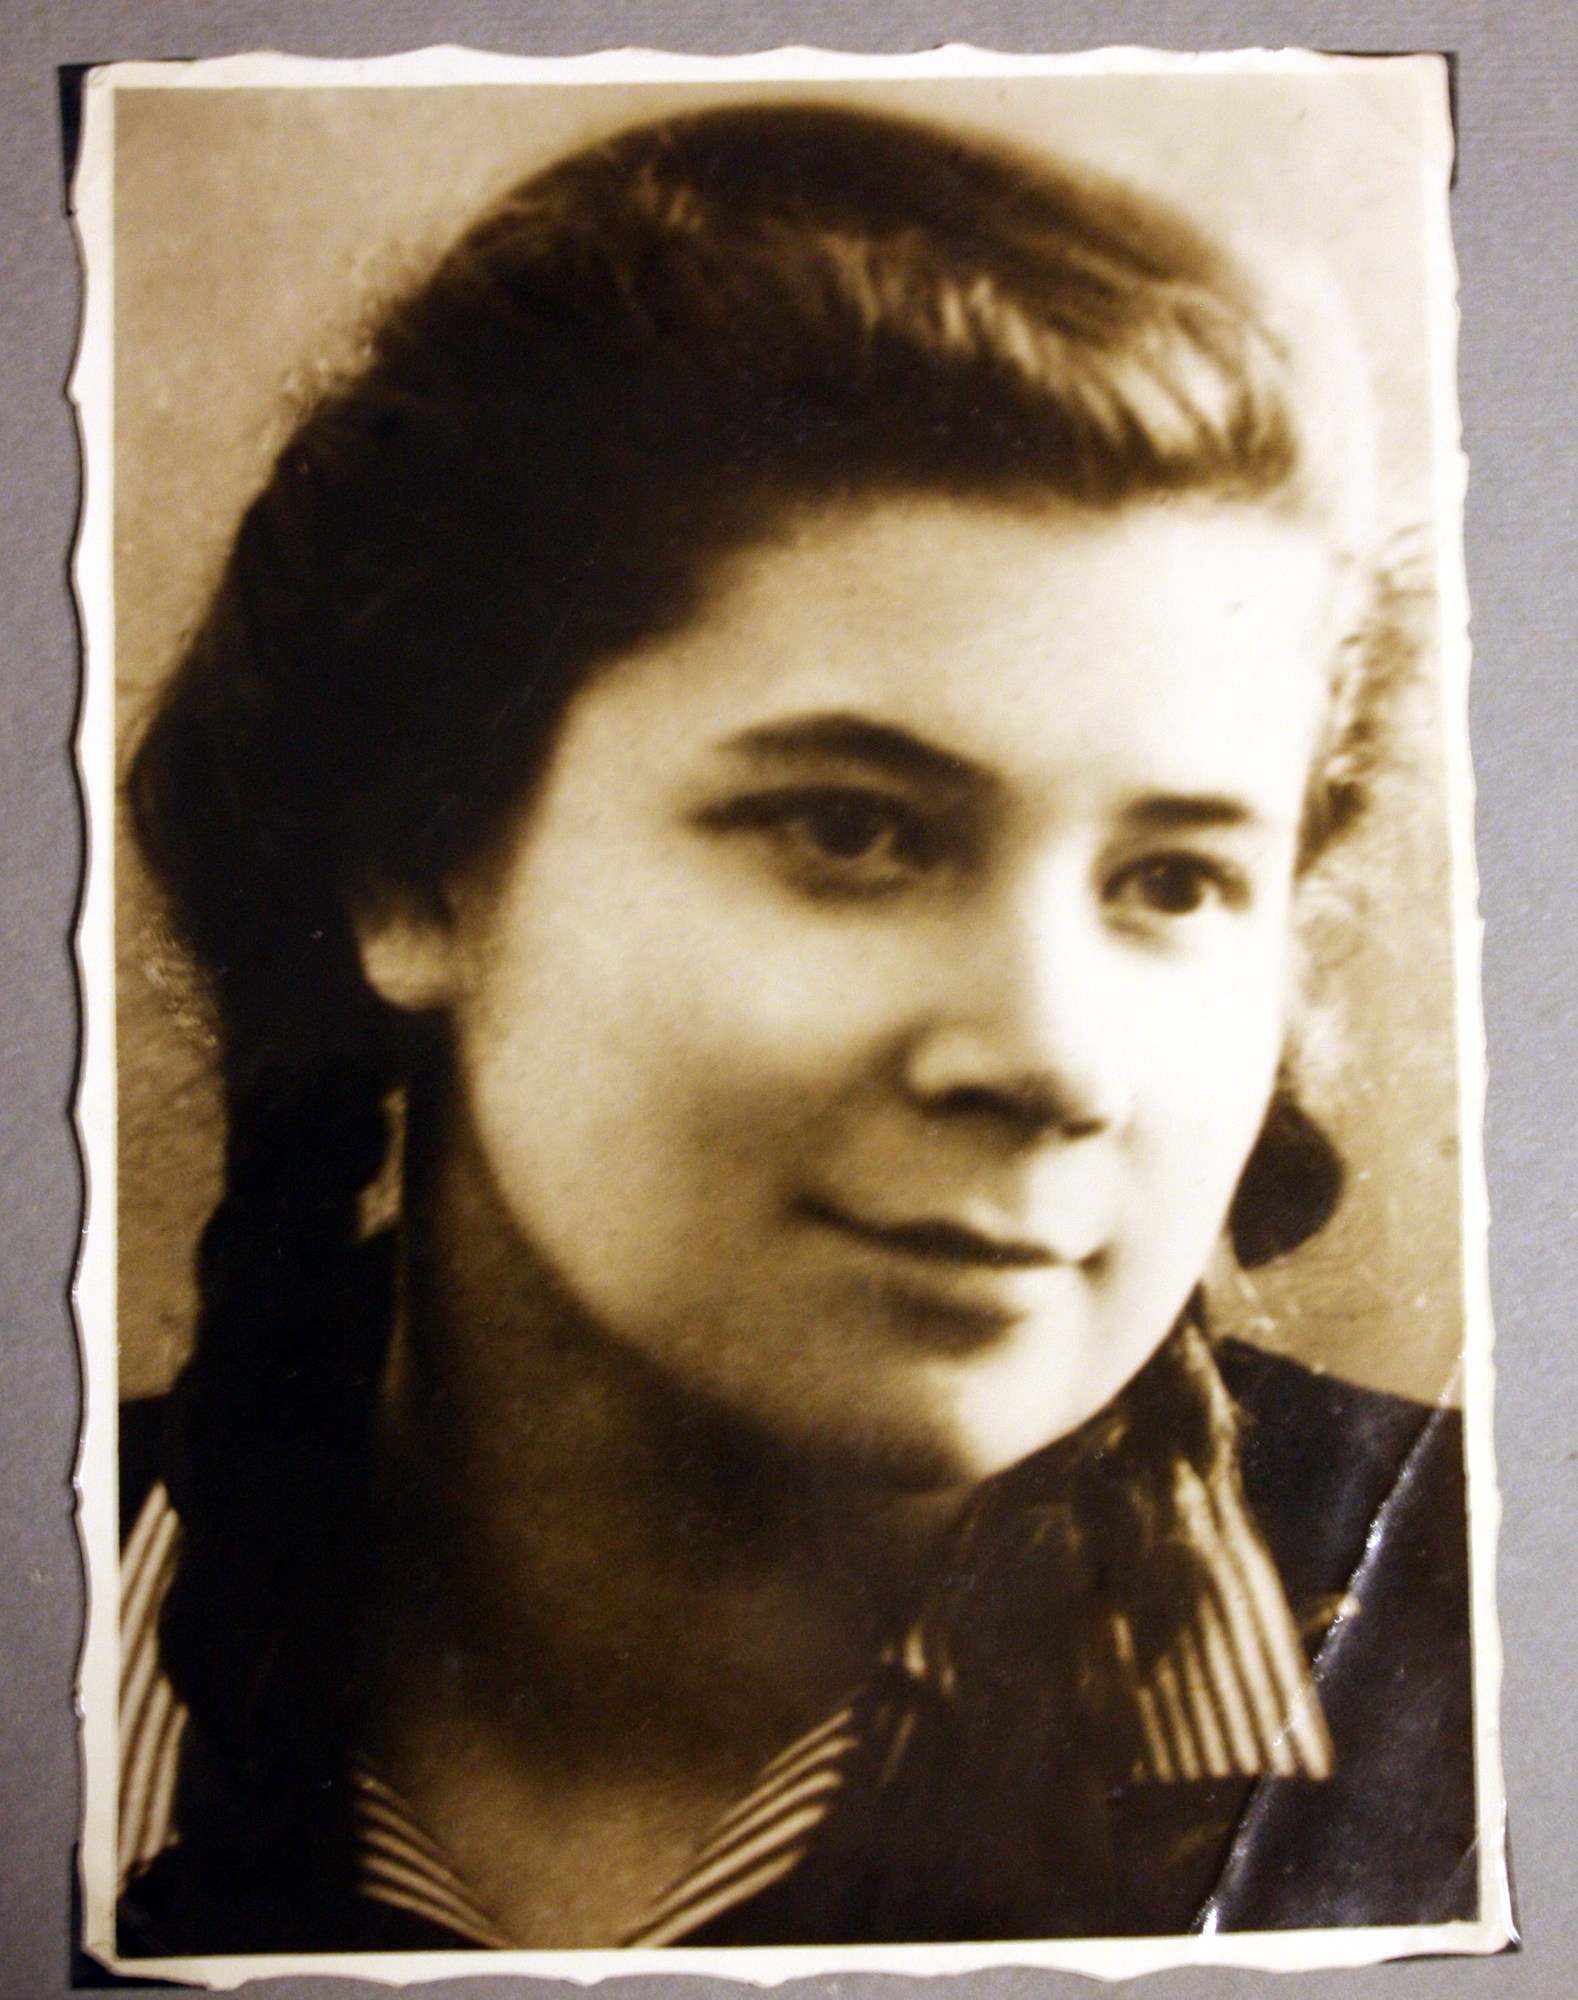 Maja Fundová shortly after the war